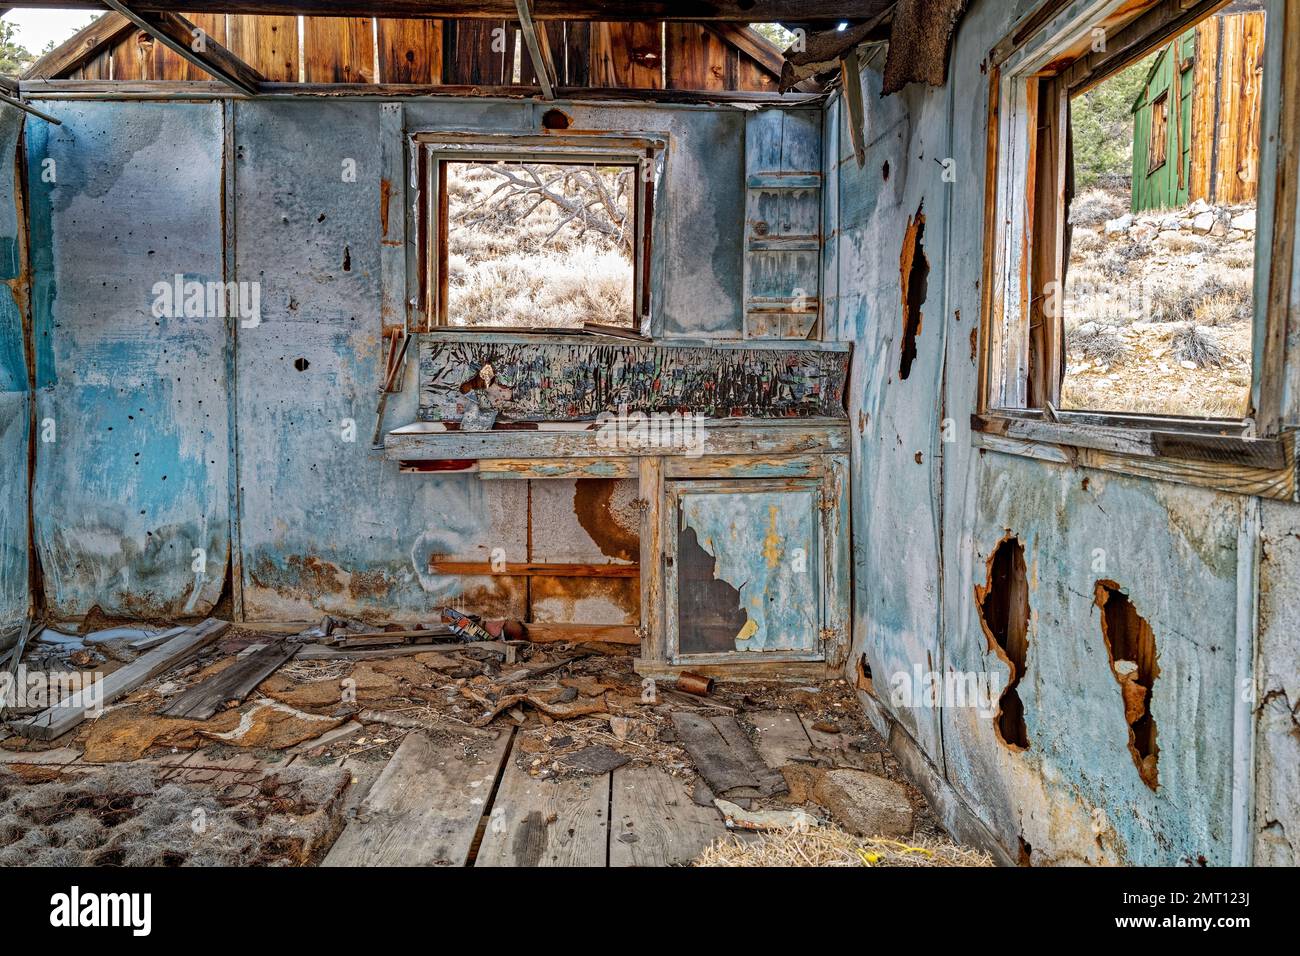 L'interno di una baracca in rovina in un'operazione mineraria abbandonata, Nevada, USA Foto Stock